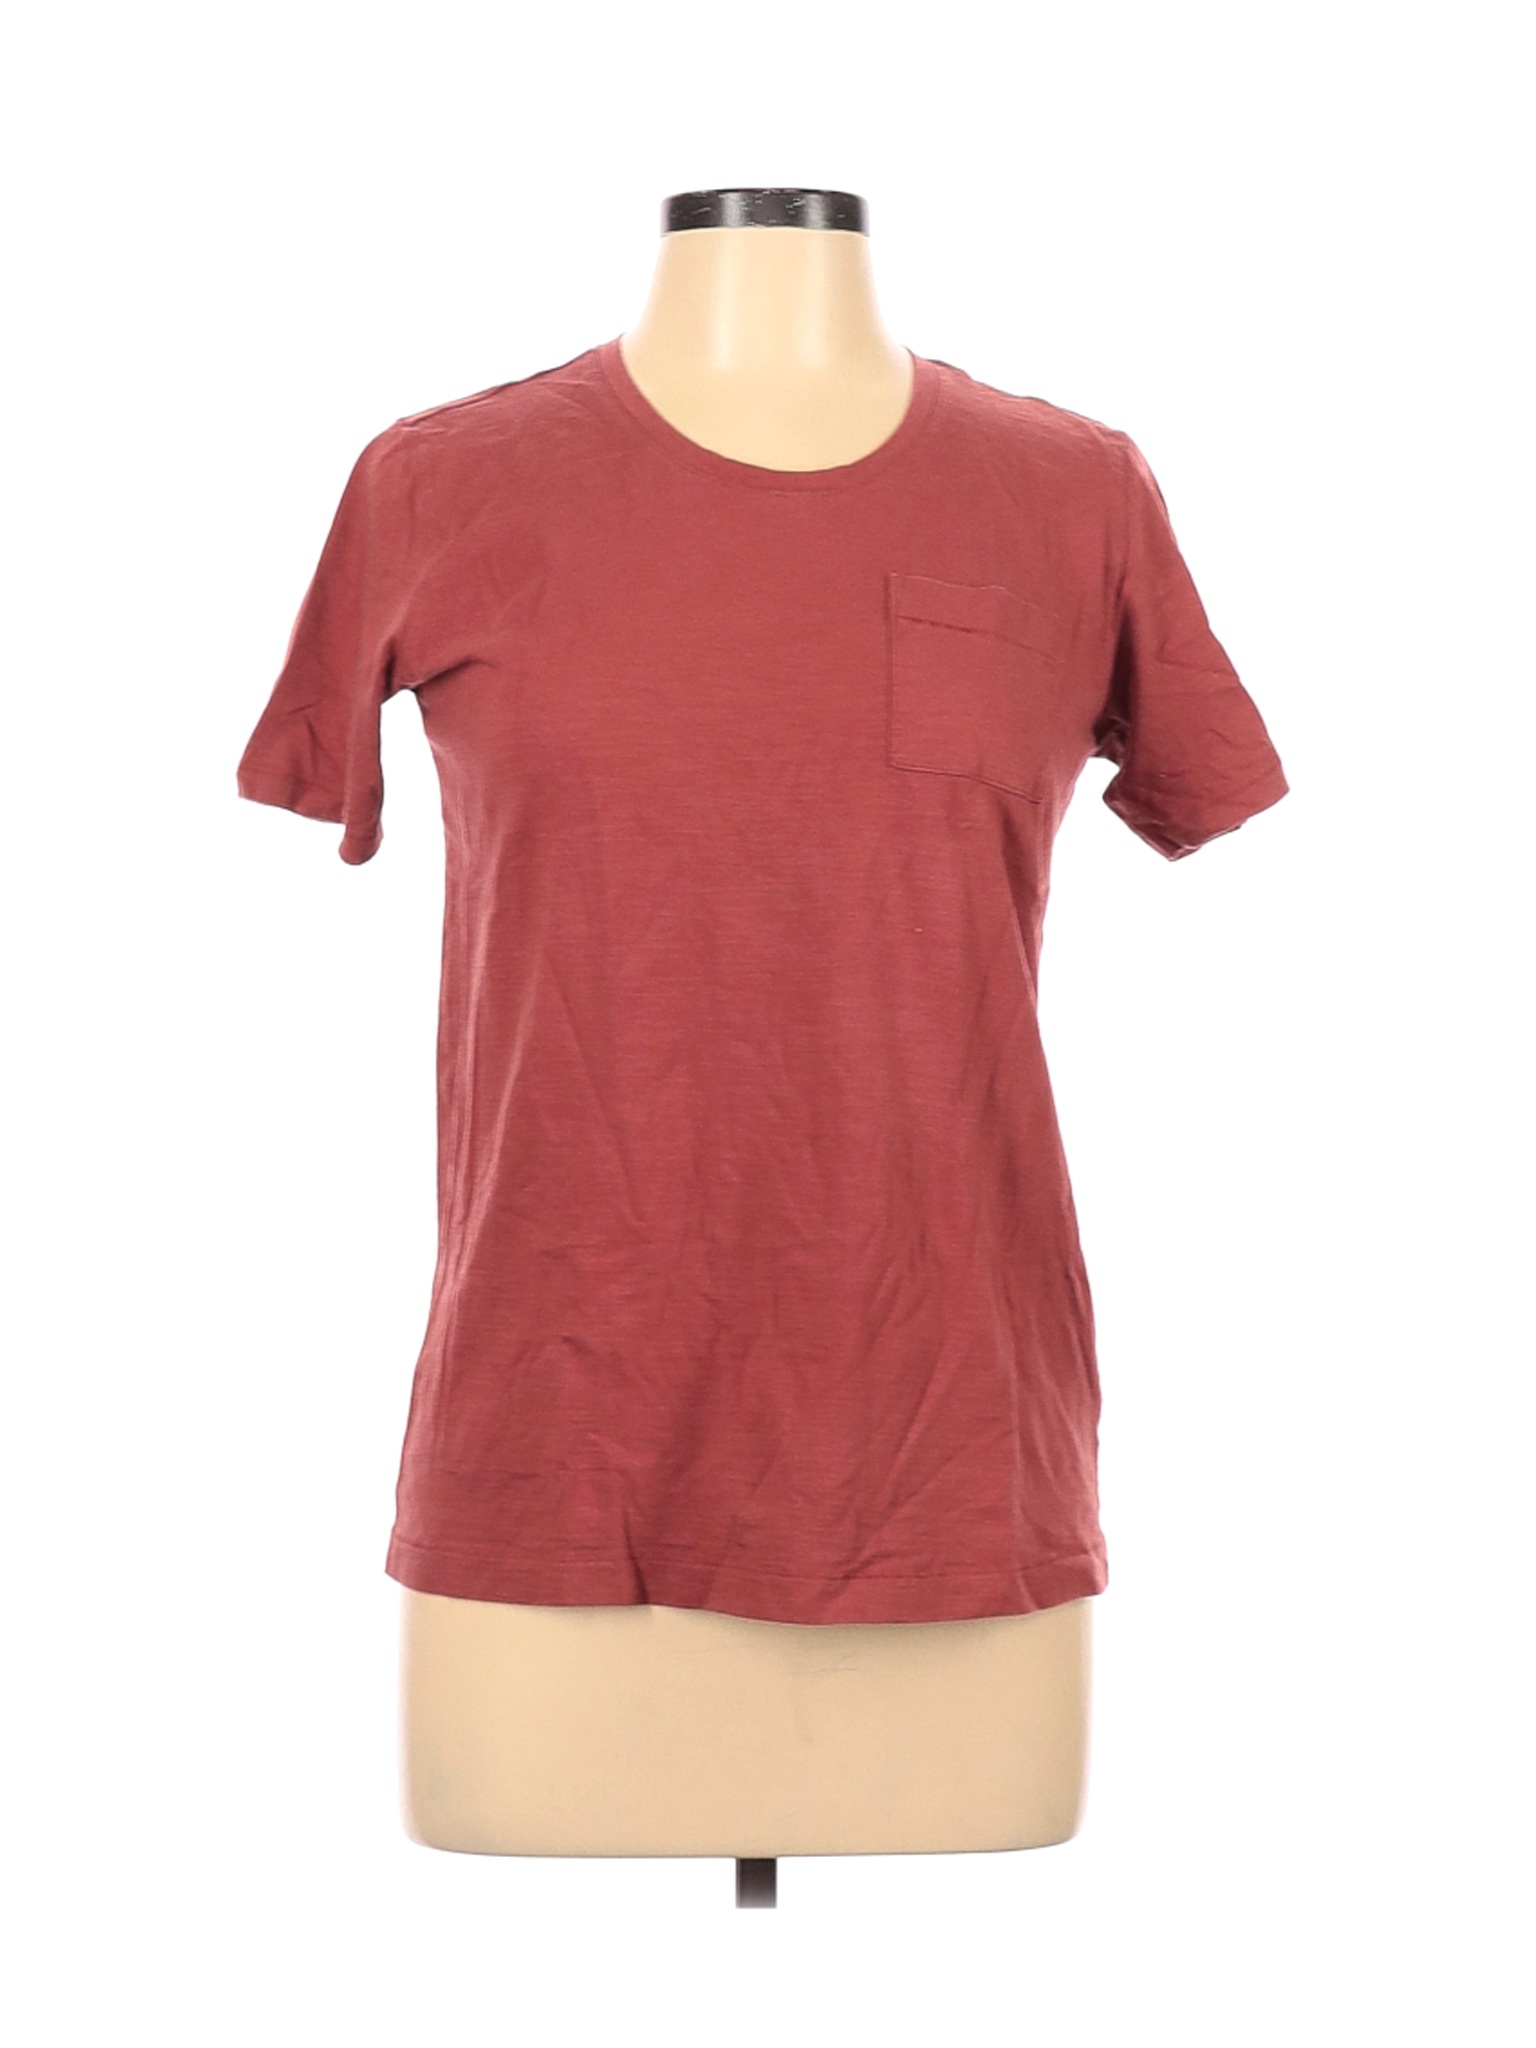 Muji Women Brown Short Sleeve T-Shirt L | eBay